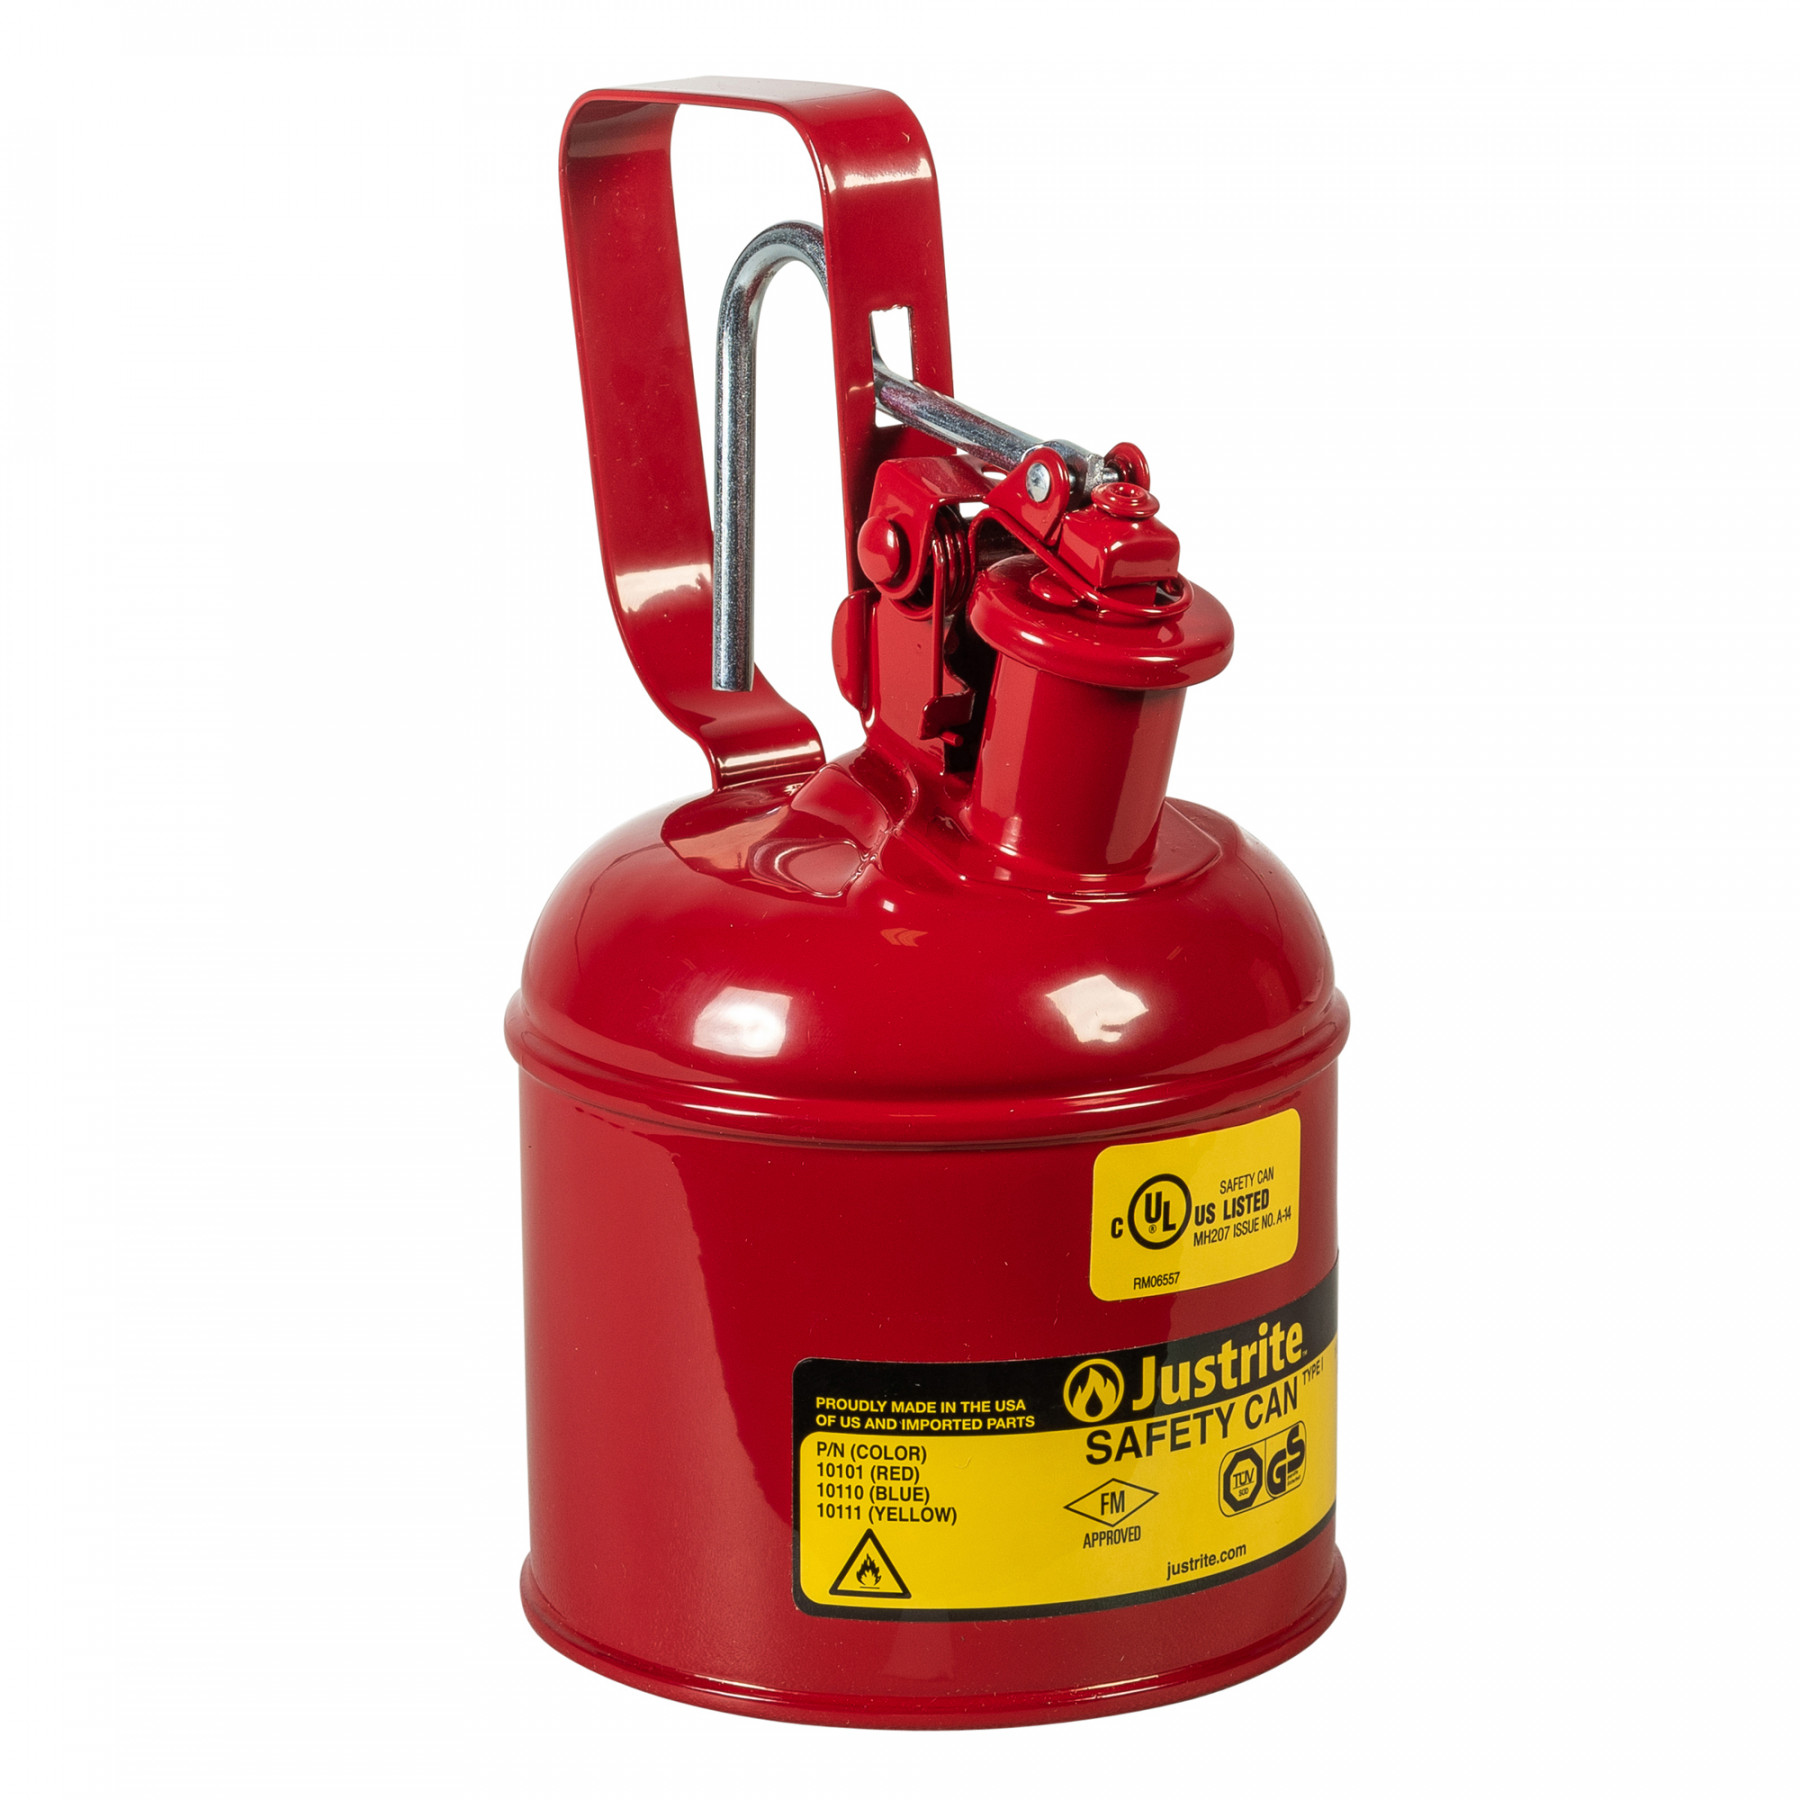 Sicherheitsbehälter Typ I, für brennbare Flüssigkeiten, 4 Liter, in rot